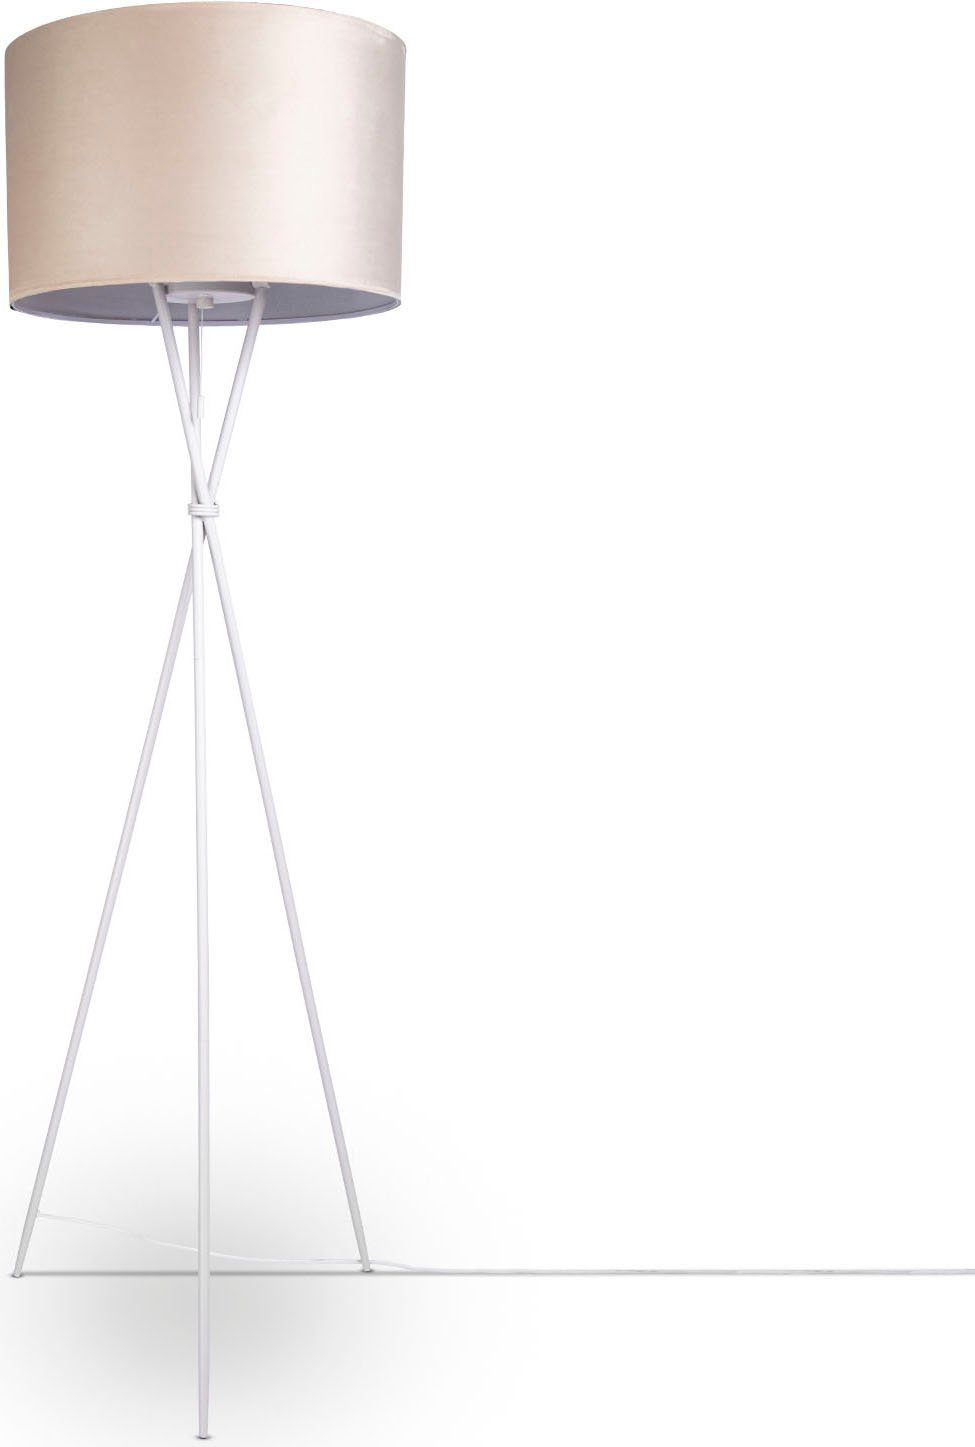 Paco Home Stehlampe Kate uni Color, ohne Leuchtmittel, Wohnzimmer Dreibein Standleuchte Velour Höhe 177,5cm Filigran E27 beige | Standleuchten